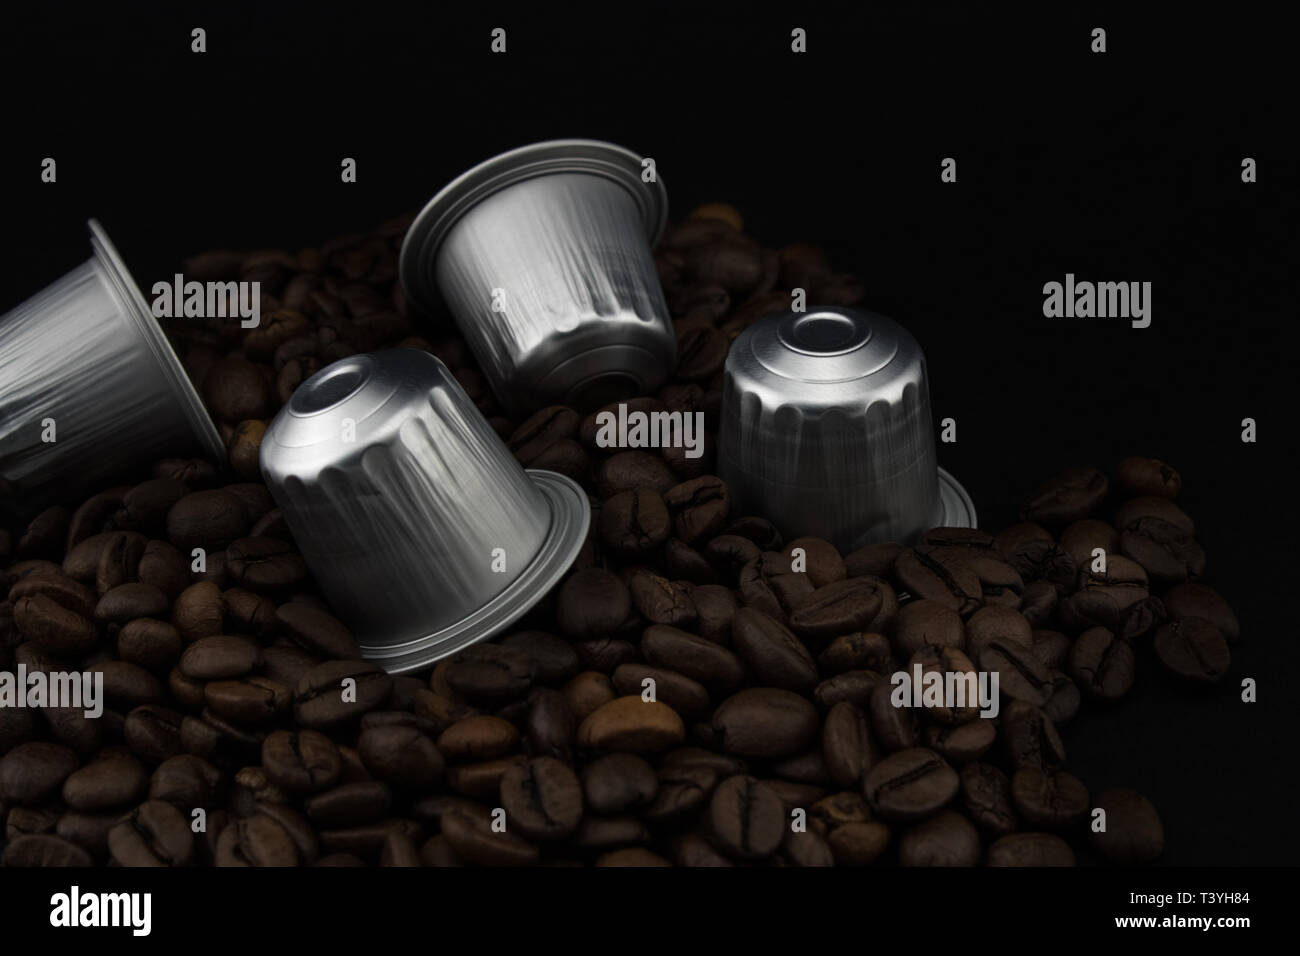 Espresso Kaffee Kapseln oder Kaffeepads auf Kaffeebohnen, schwarzen Hintergrund. Kapseln für die Kaffeemaschine. Stockfoto